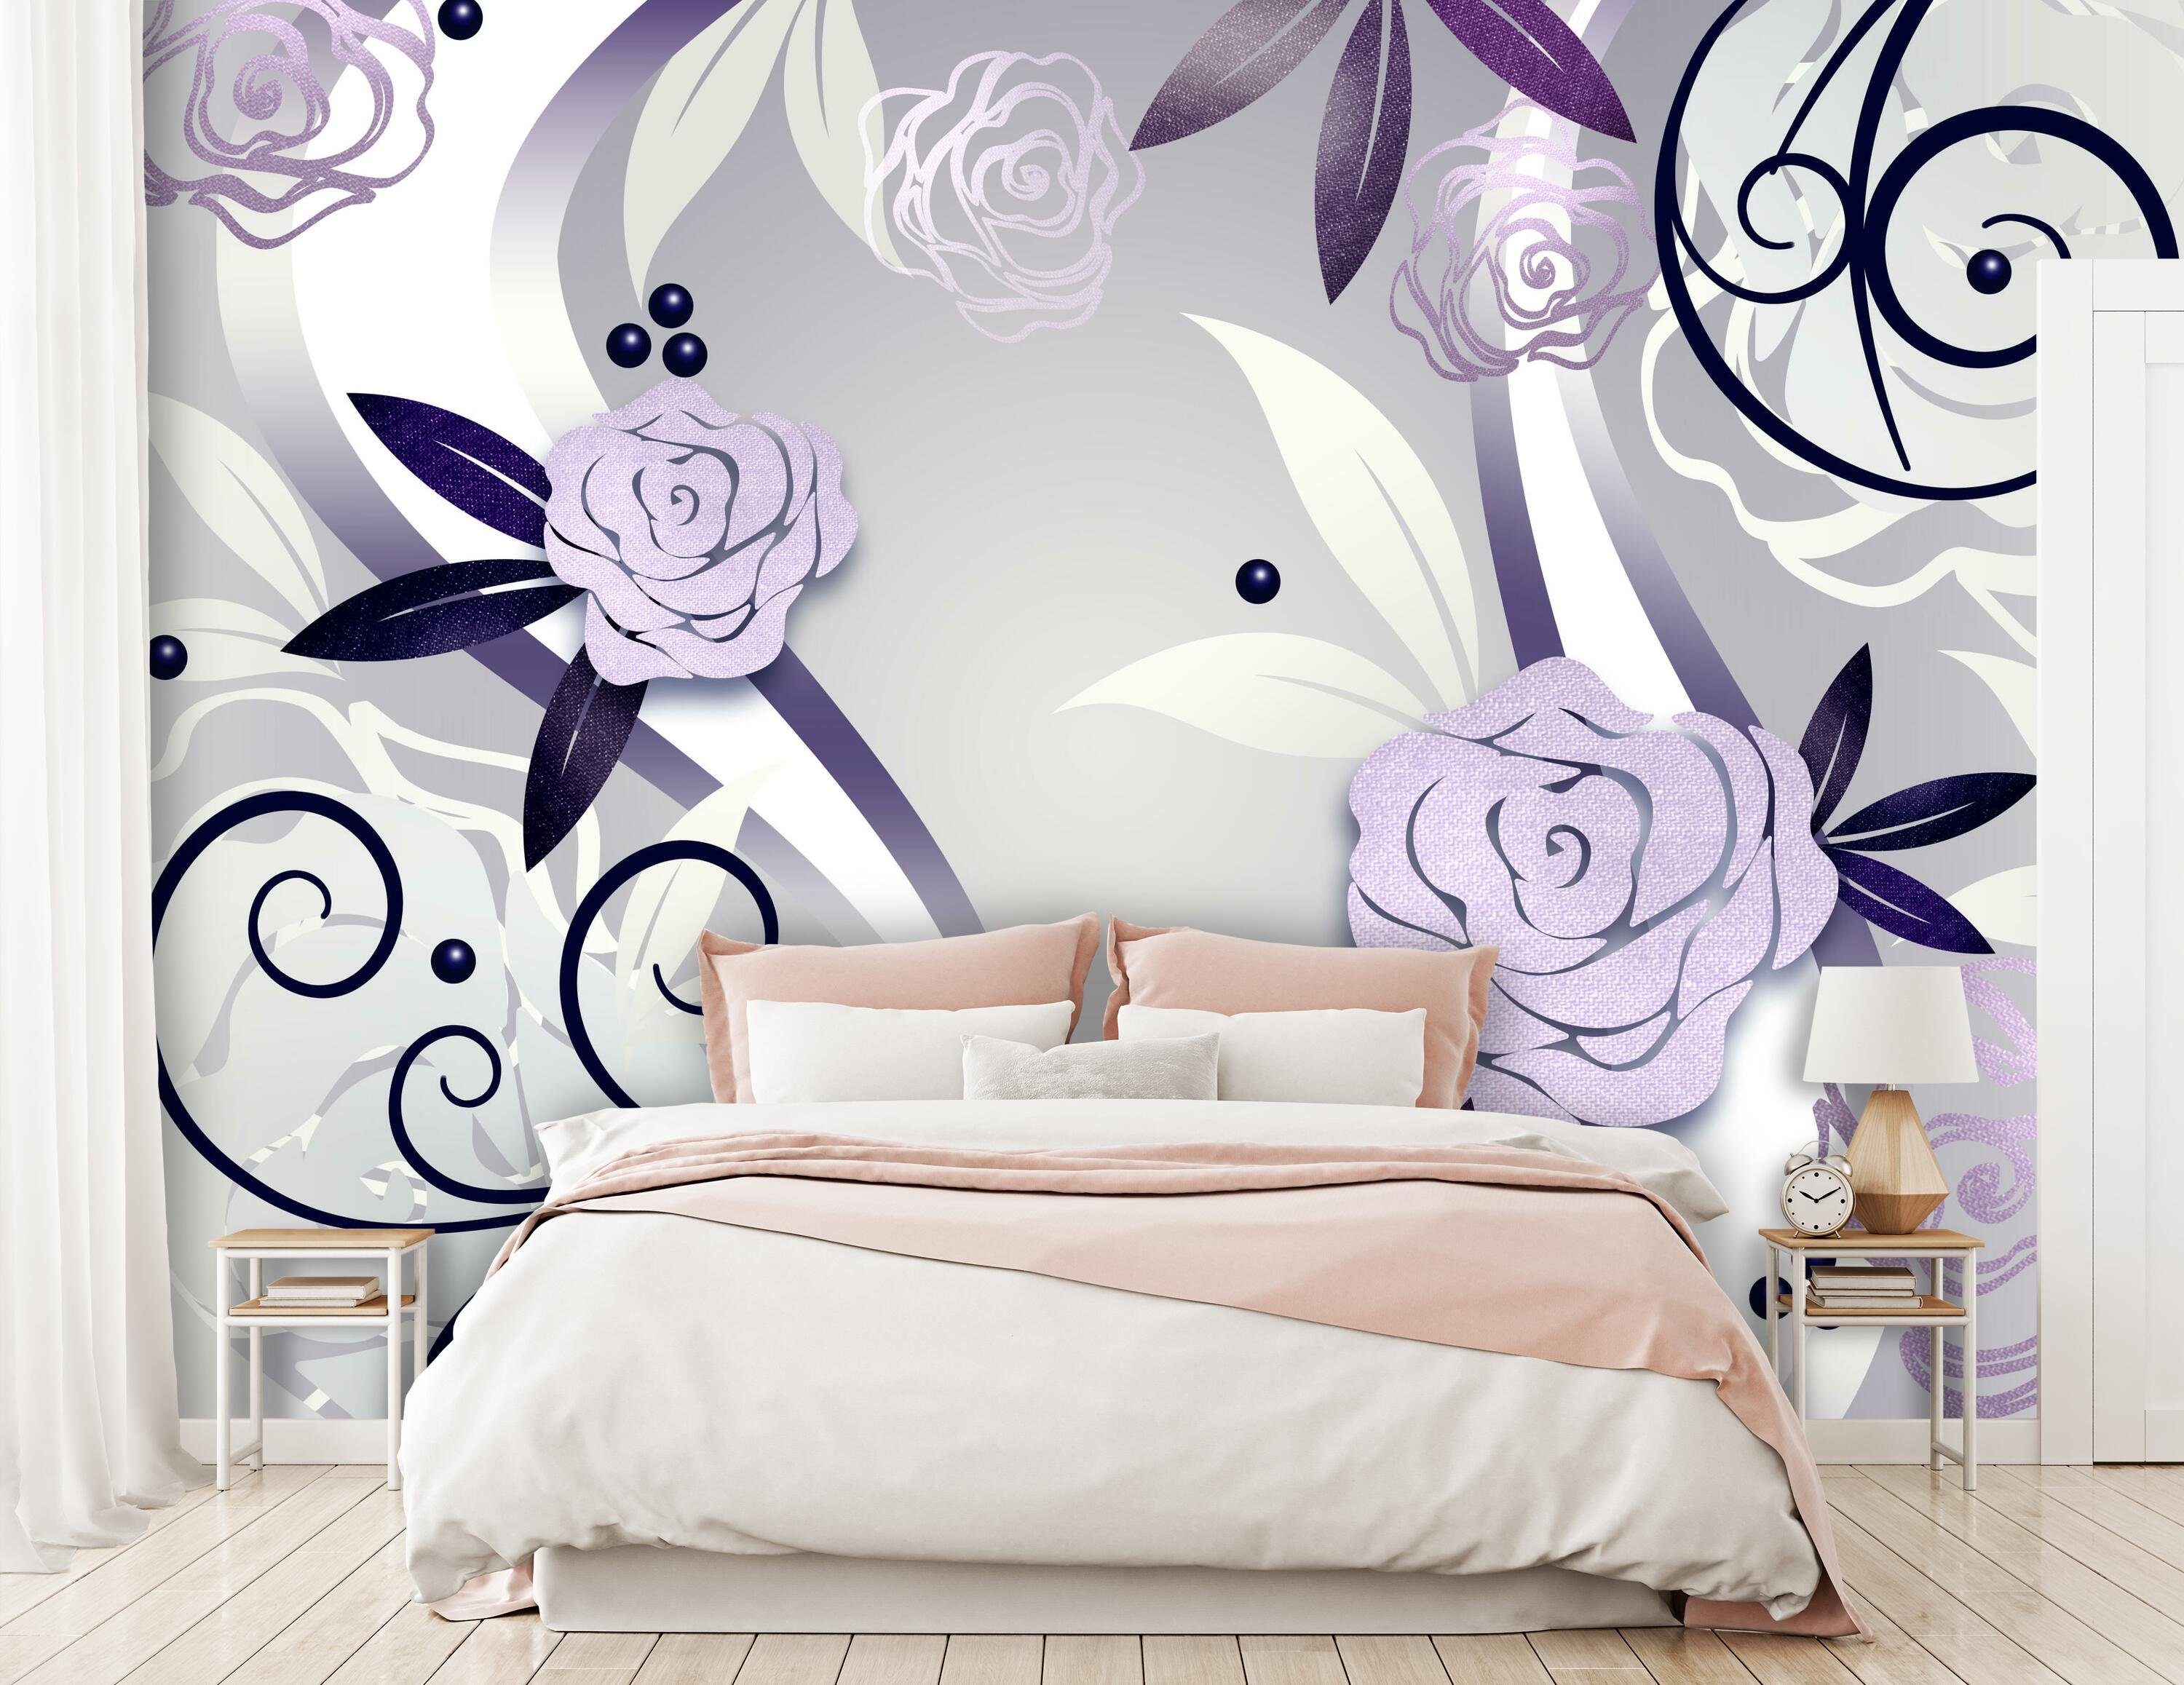 wandmotiv24 Wandtapete, Ornamente, violette glatt, Motivtapete, Rosenblüten matt, Vliestapete Fototapete